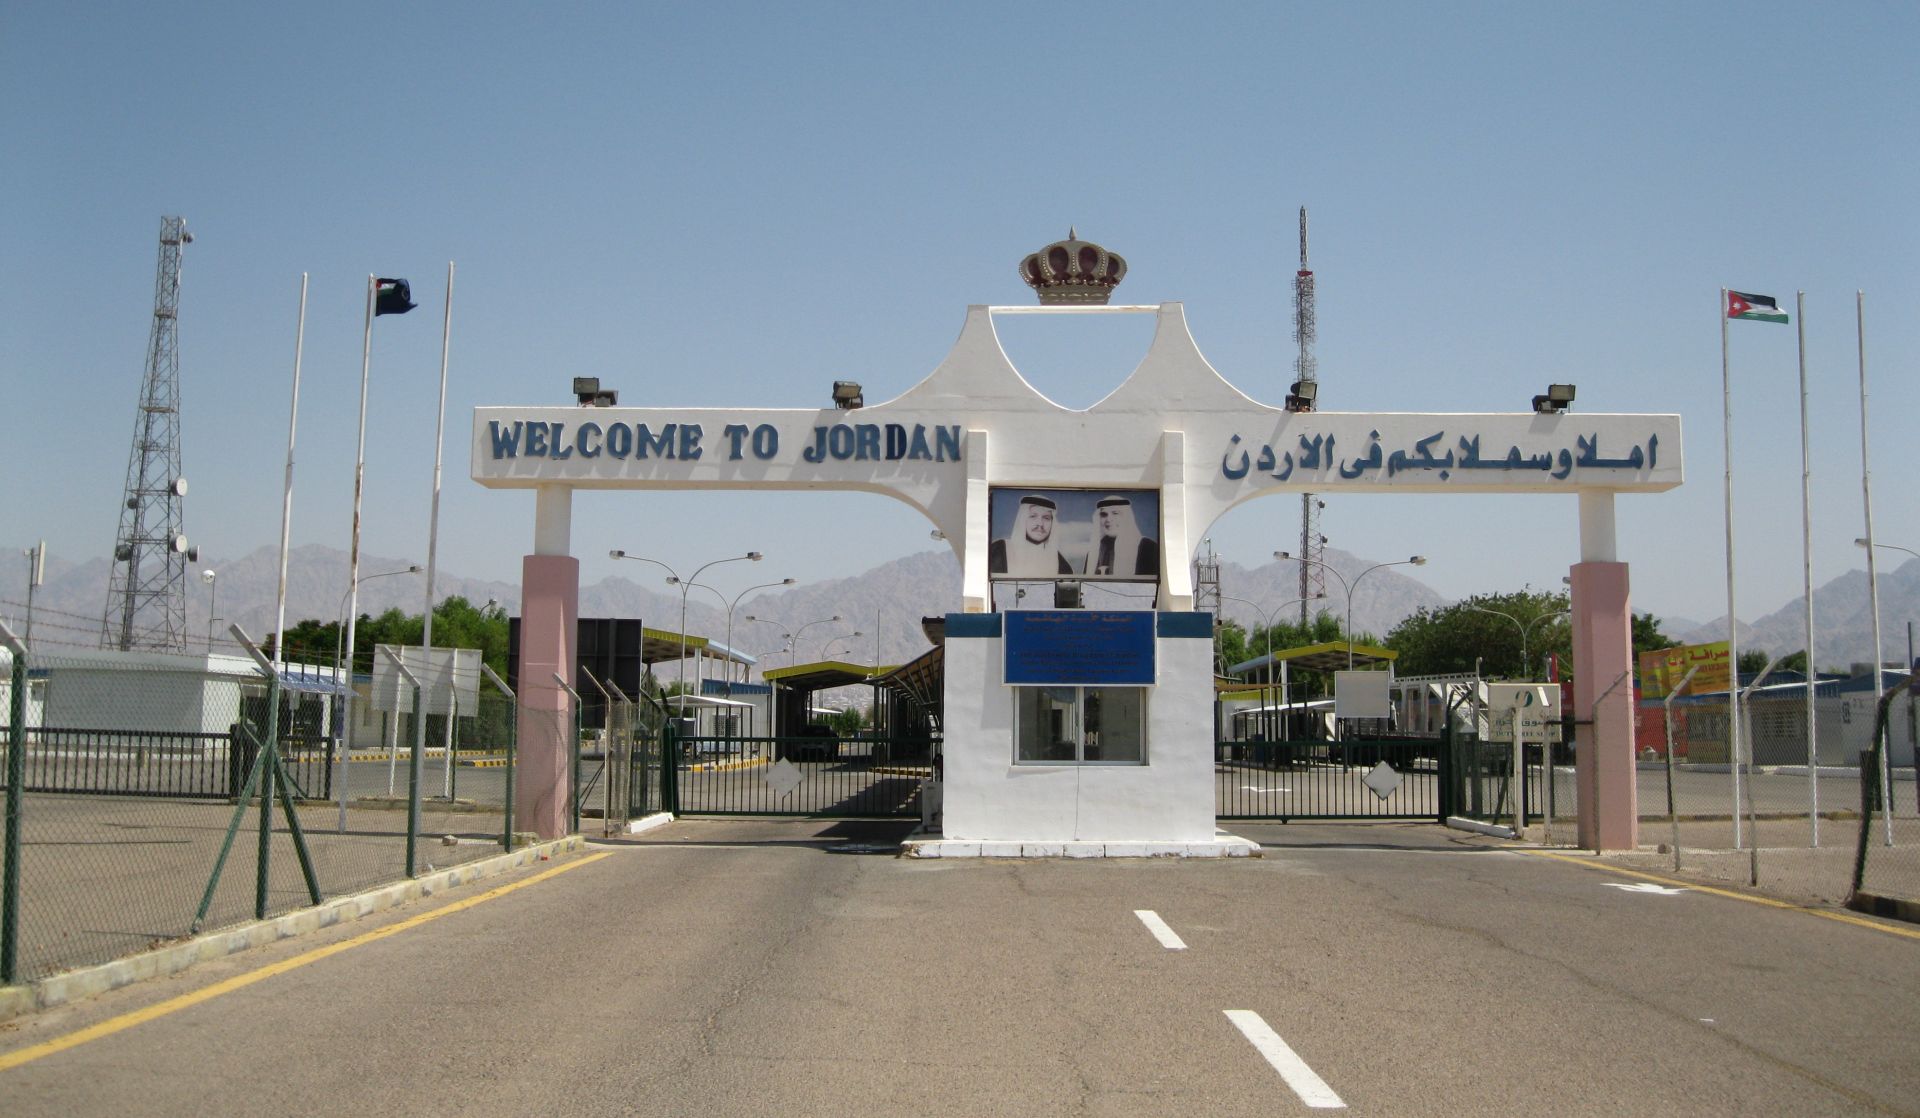 सीरिया-जॉर्डन सीमा मार्ग